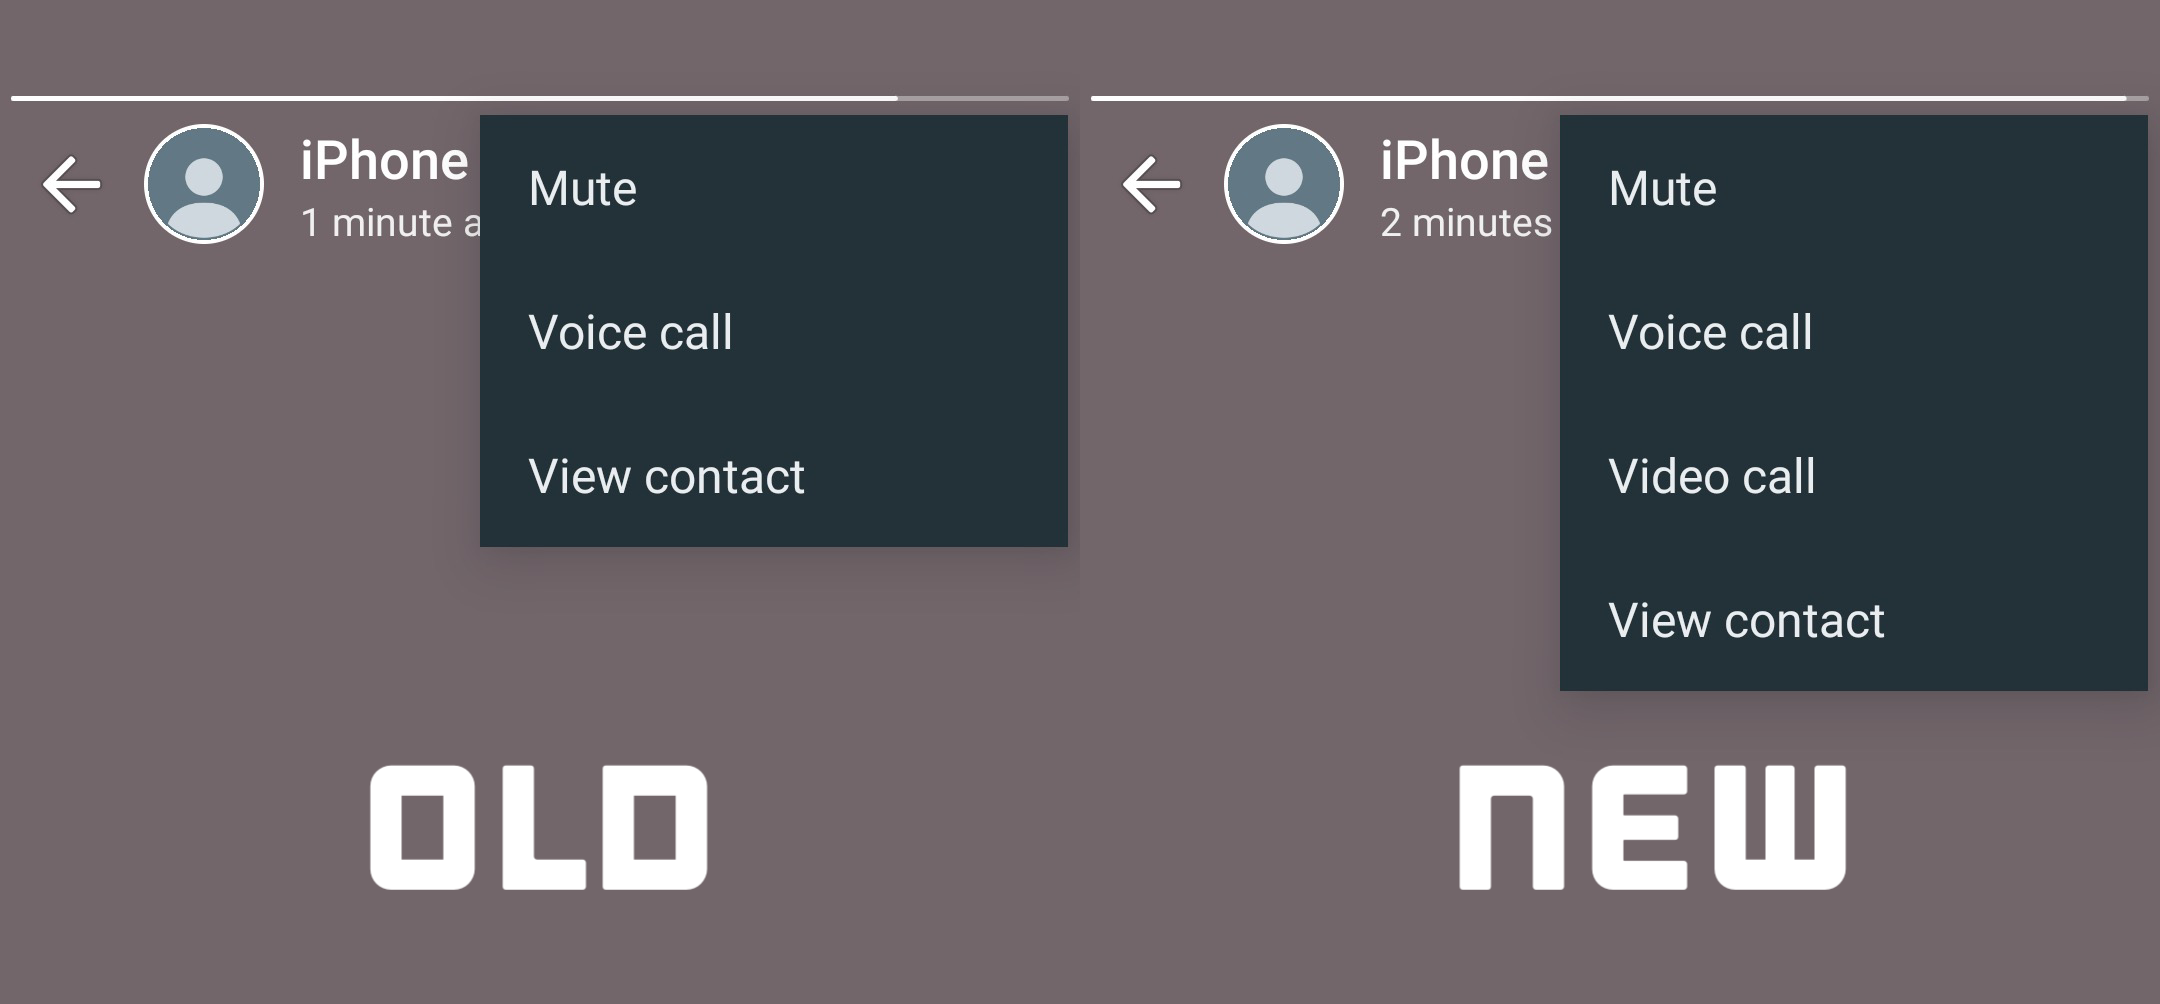 WhatsApp 3 Nieuwe wijzigingen GEHEIME iPhone Android-oproepstatus